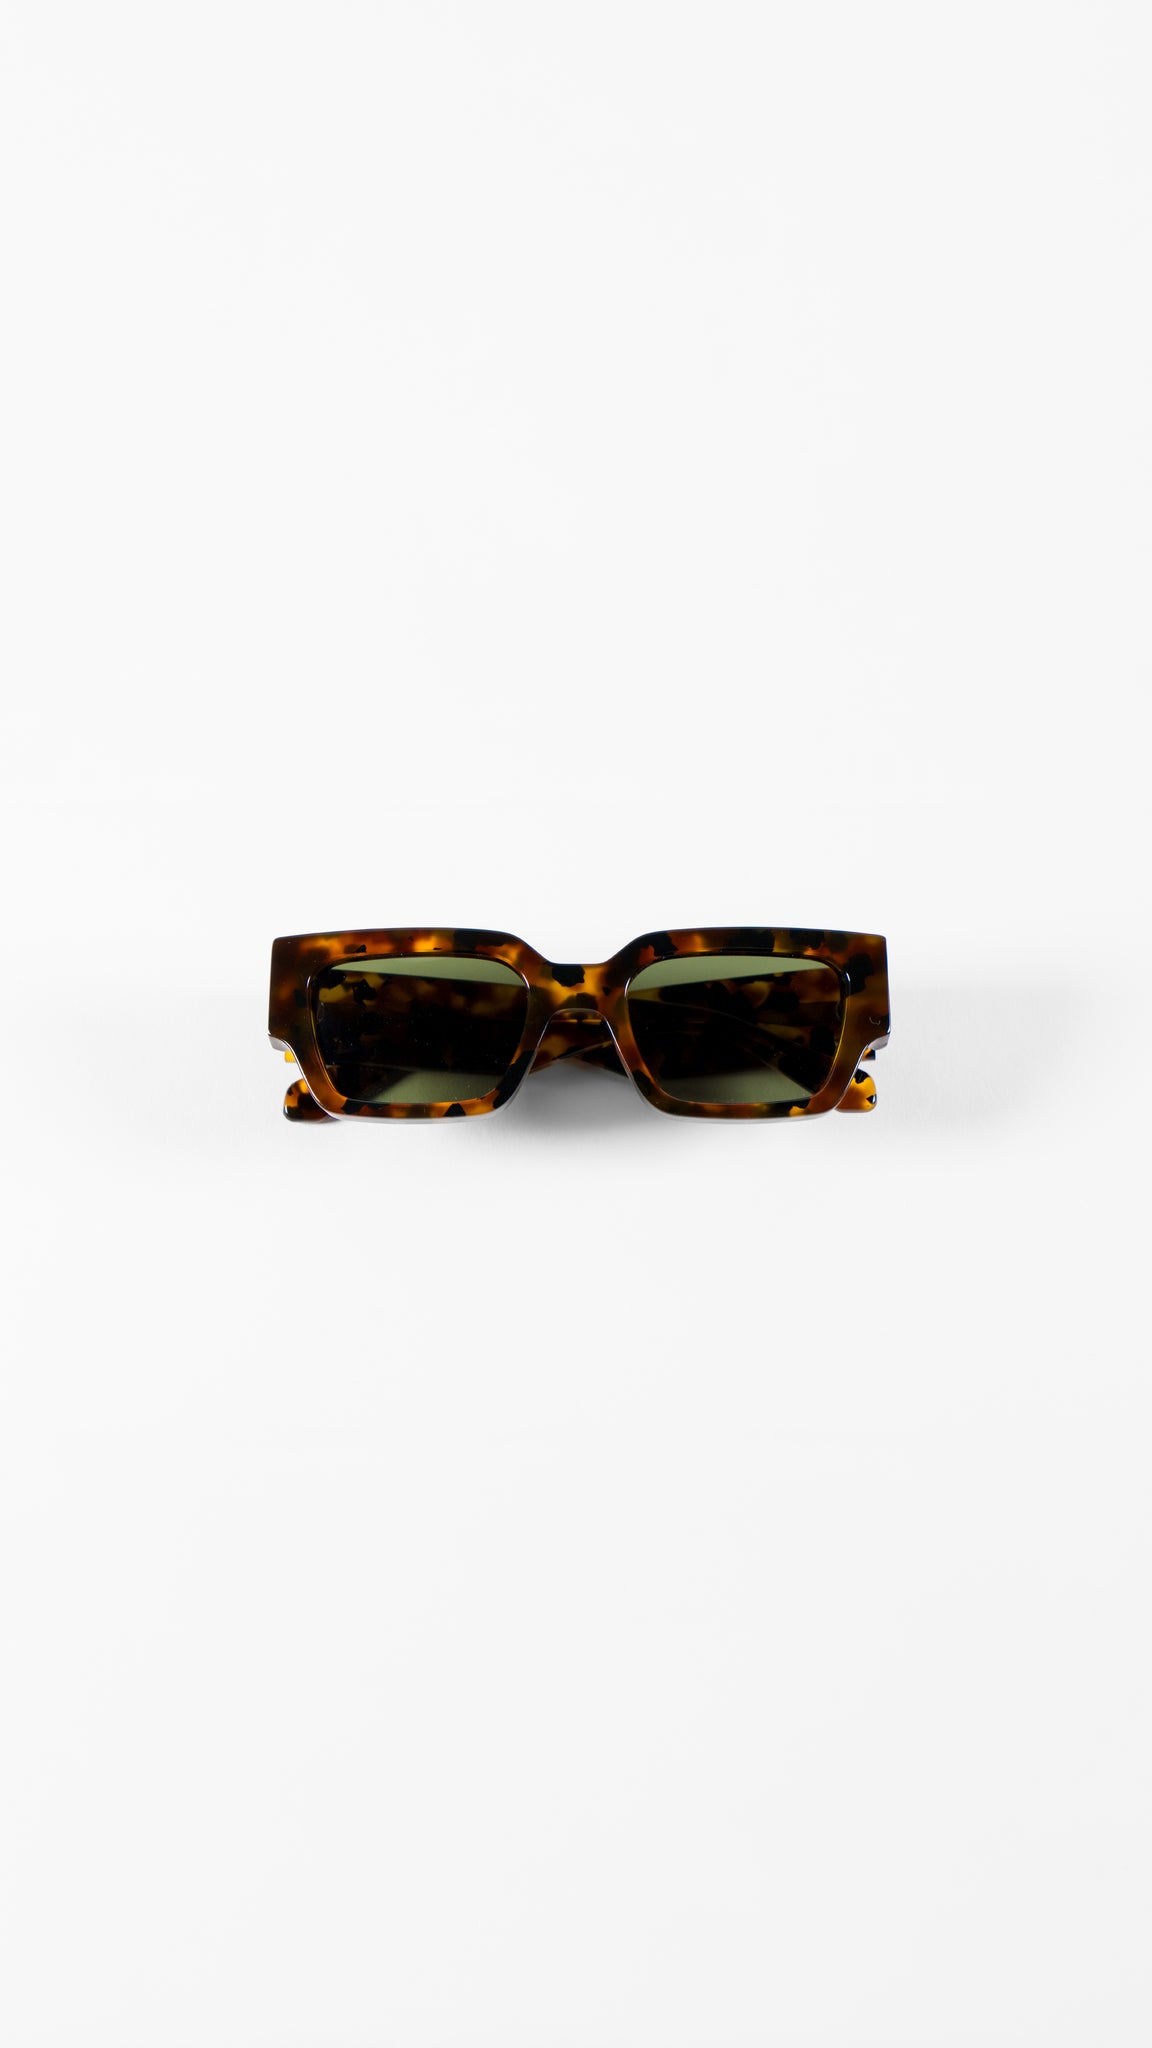 MBD 01 Sunglasses